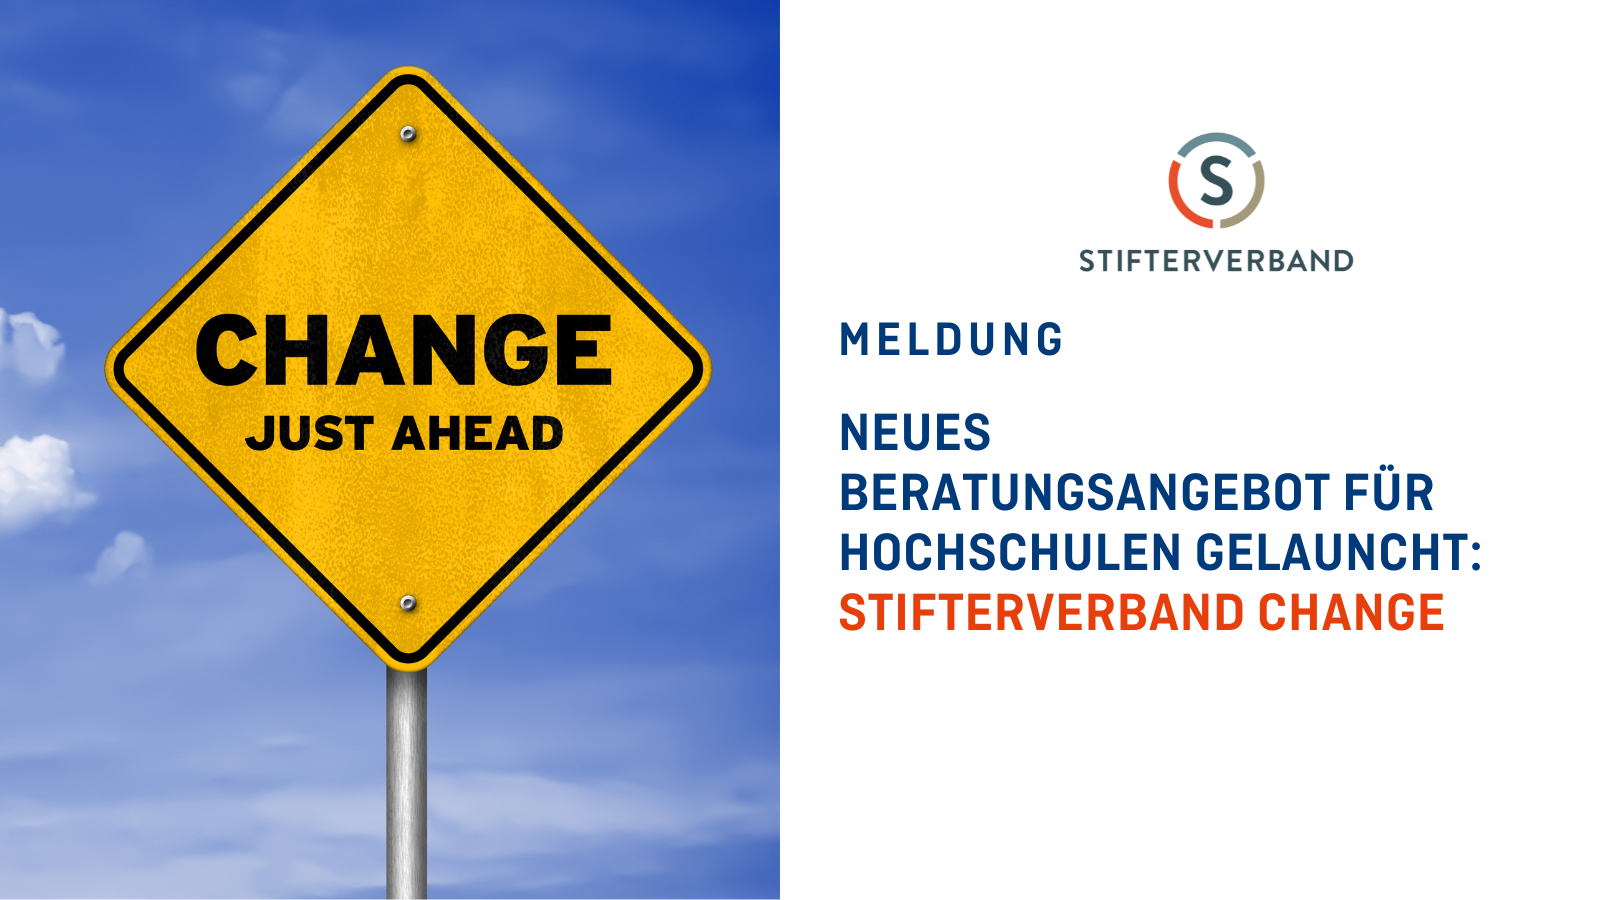 Bild zeigt ein Straßenschild, auf dem "Change Just Ahead" steht. Damit wird angekündigt, dass vom Stiftverband das Beratungs- und Weiterbildungsangebot Stifterverband Change für Hochschulen gelauncht wurde.